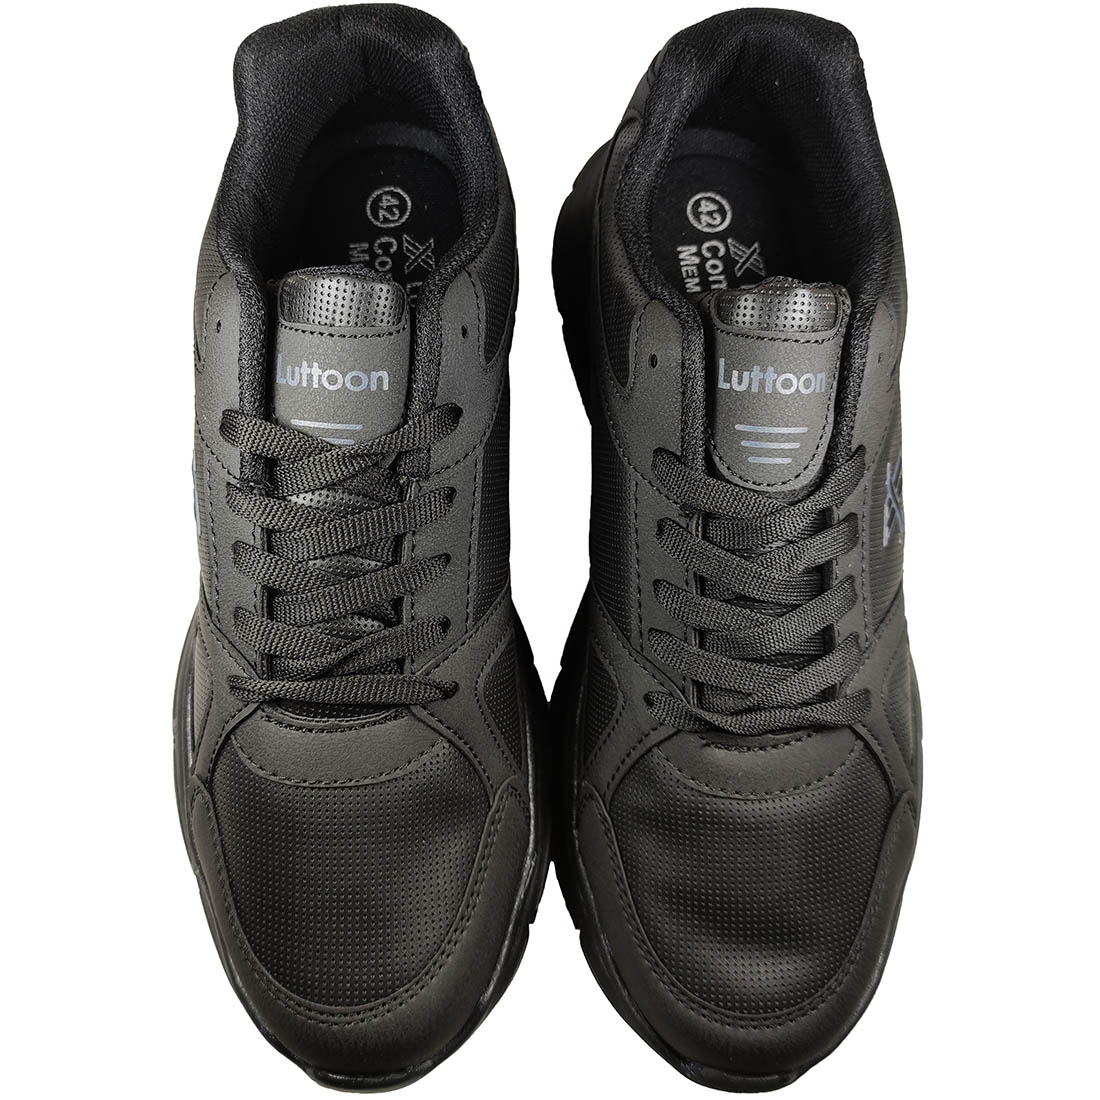 Αθλητικά Παπούτσια Luttoon 251 Μαύρο